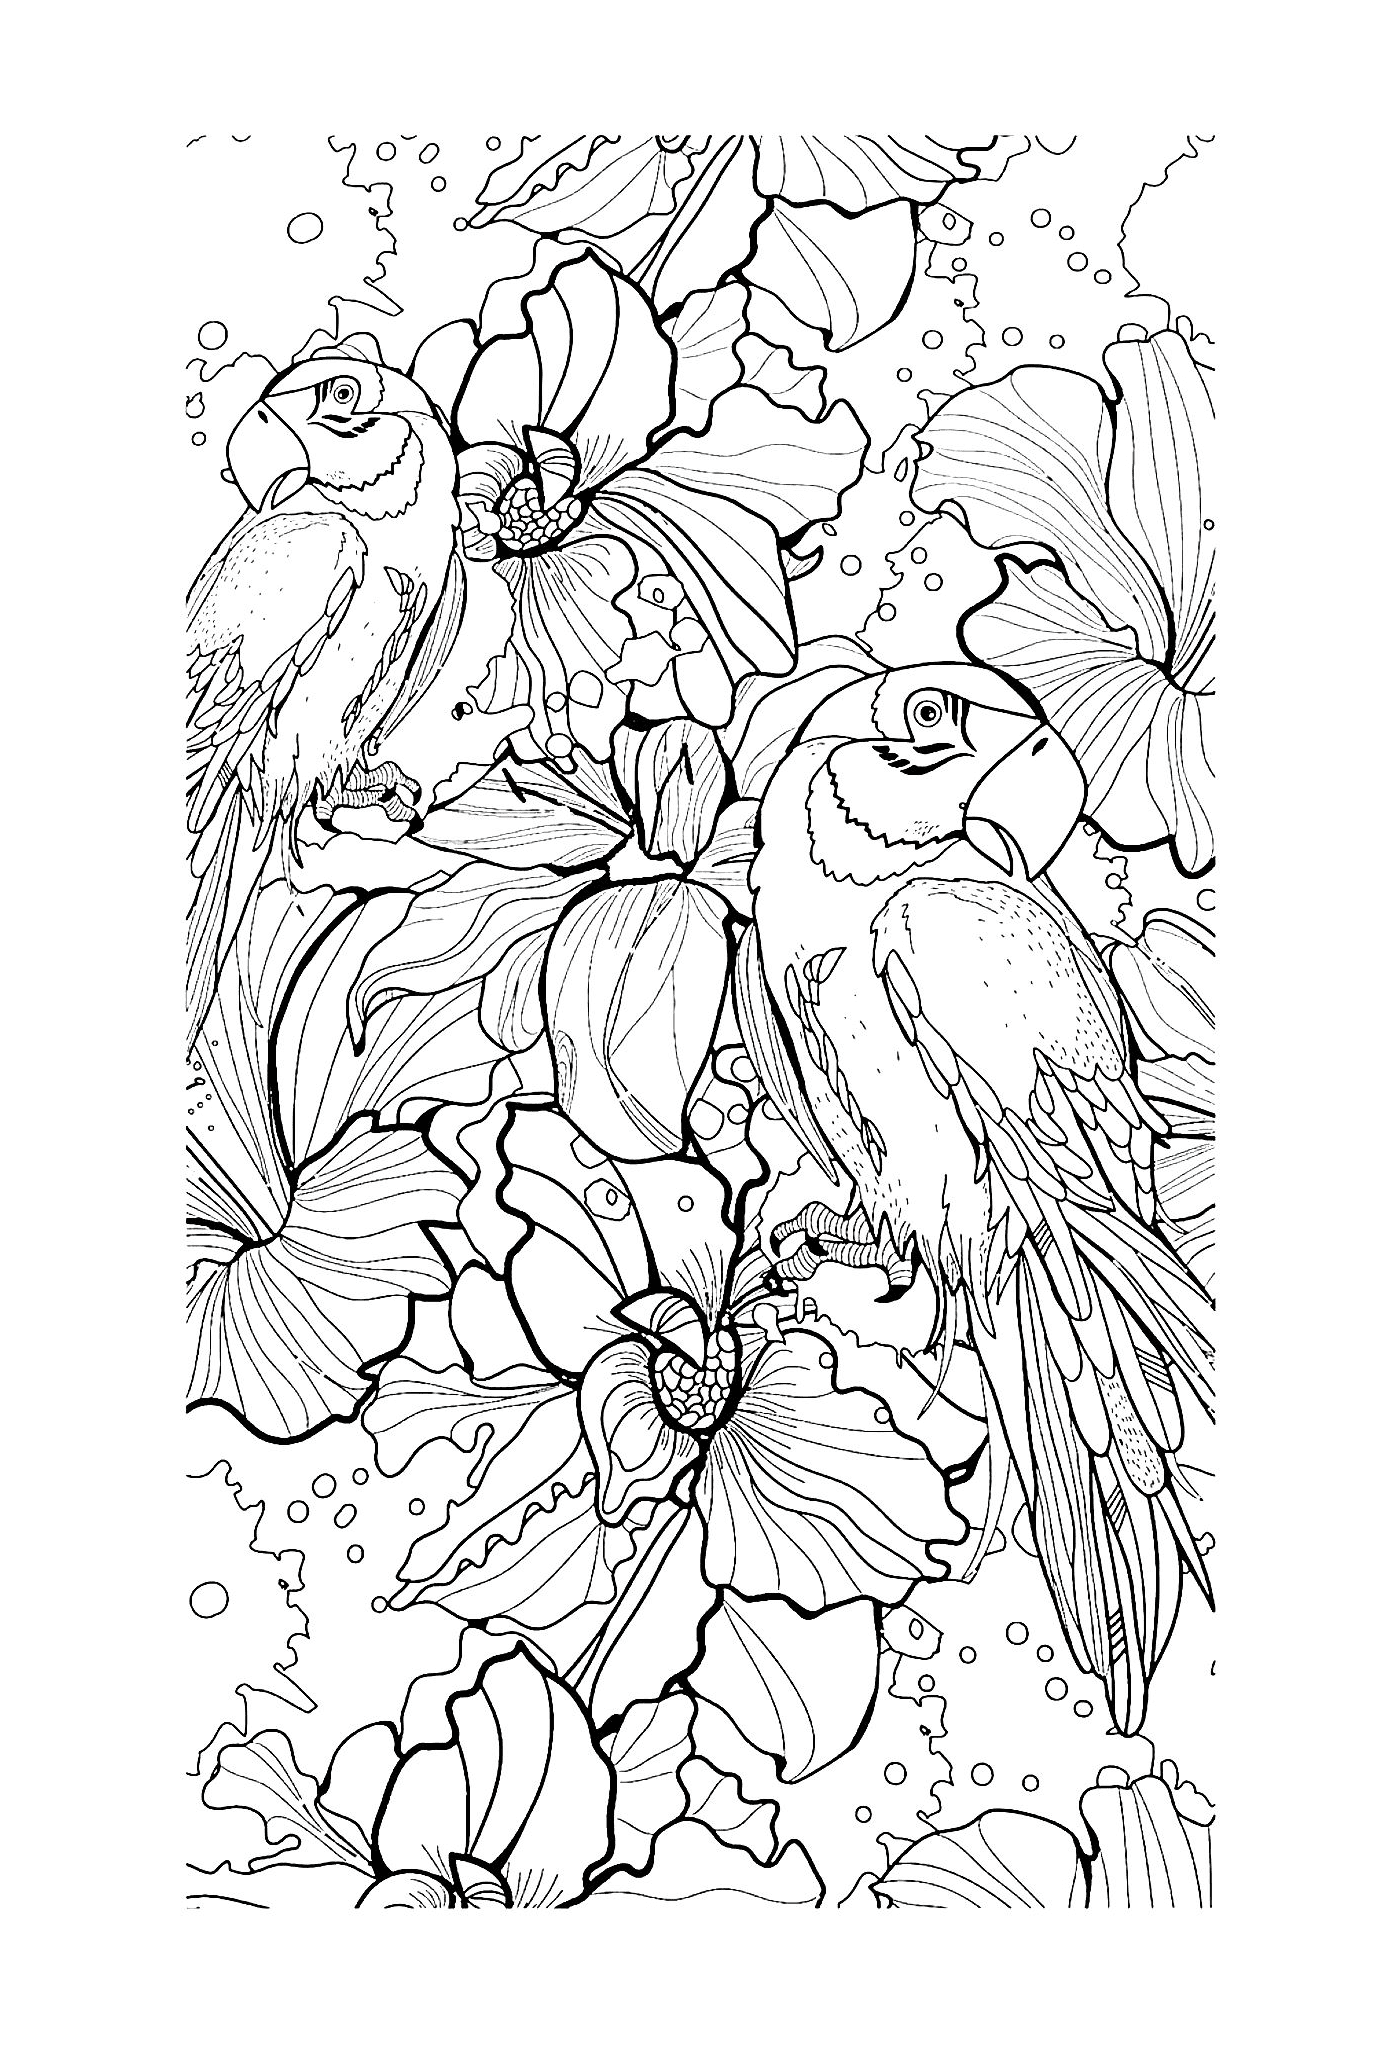  Vögel und Blumen 